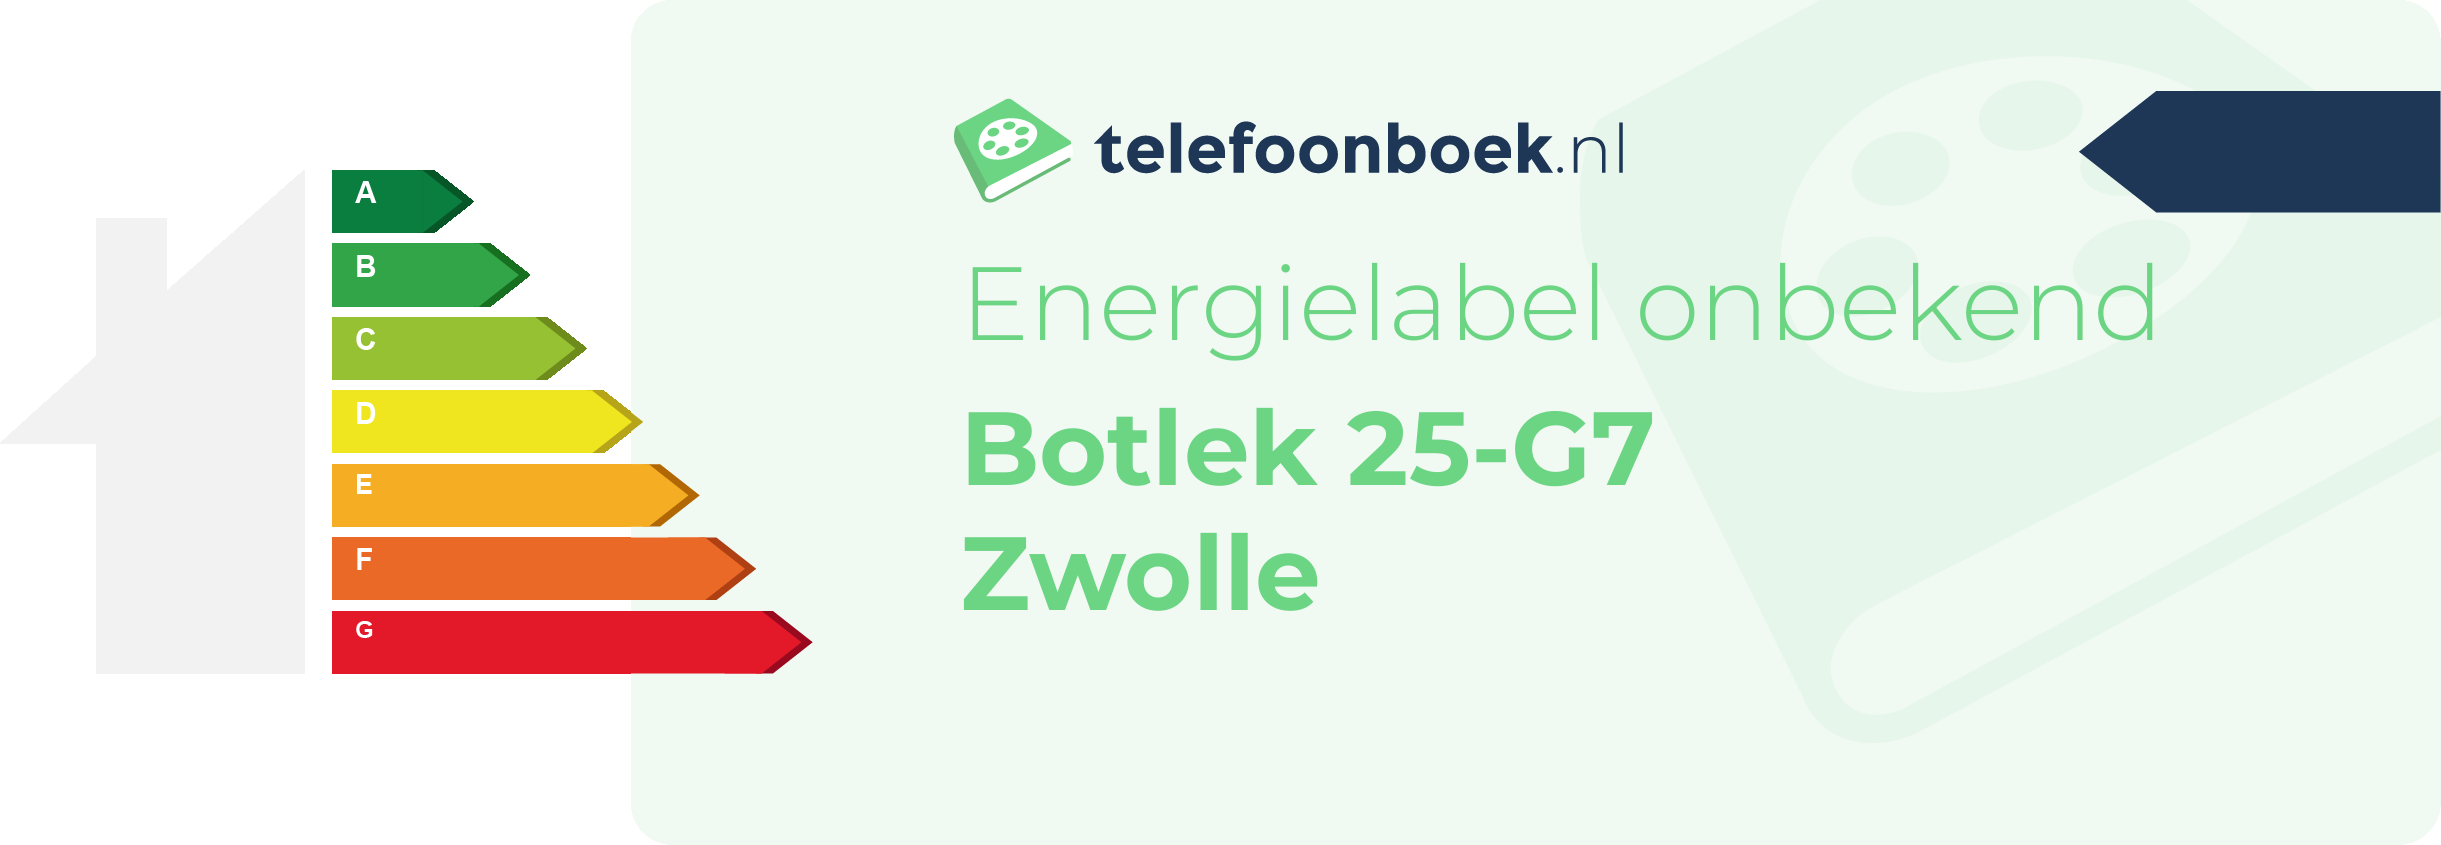 Energielabel Botlek 25-G7 Zwolle